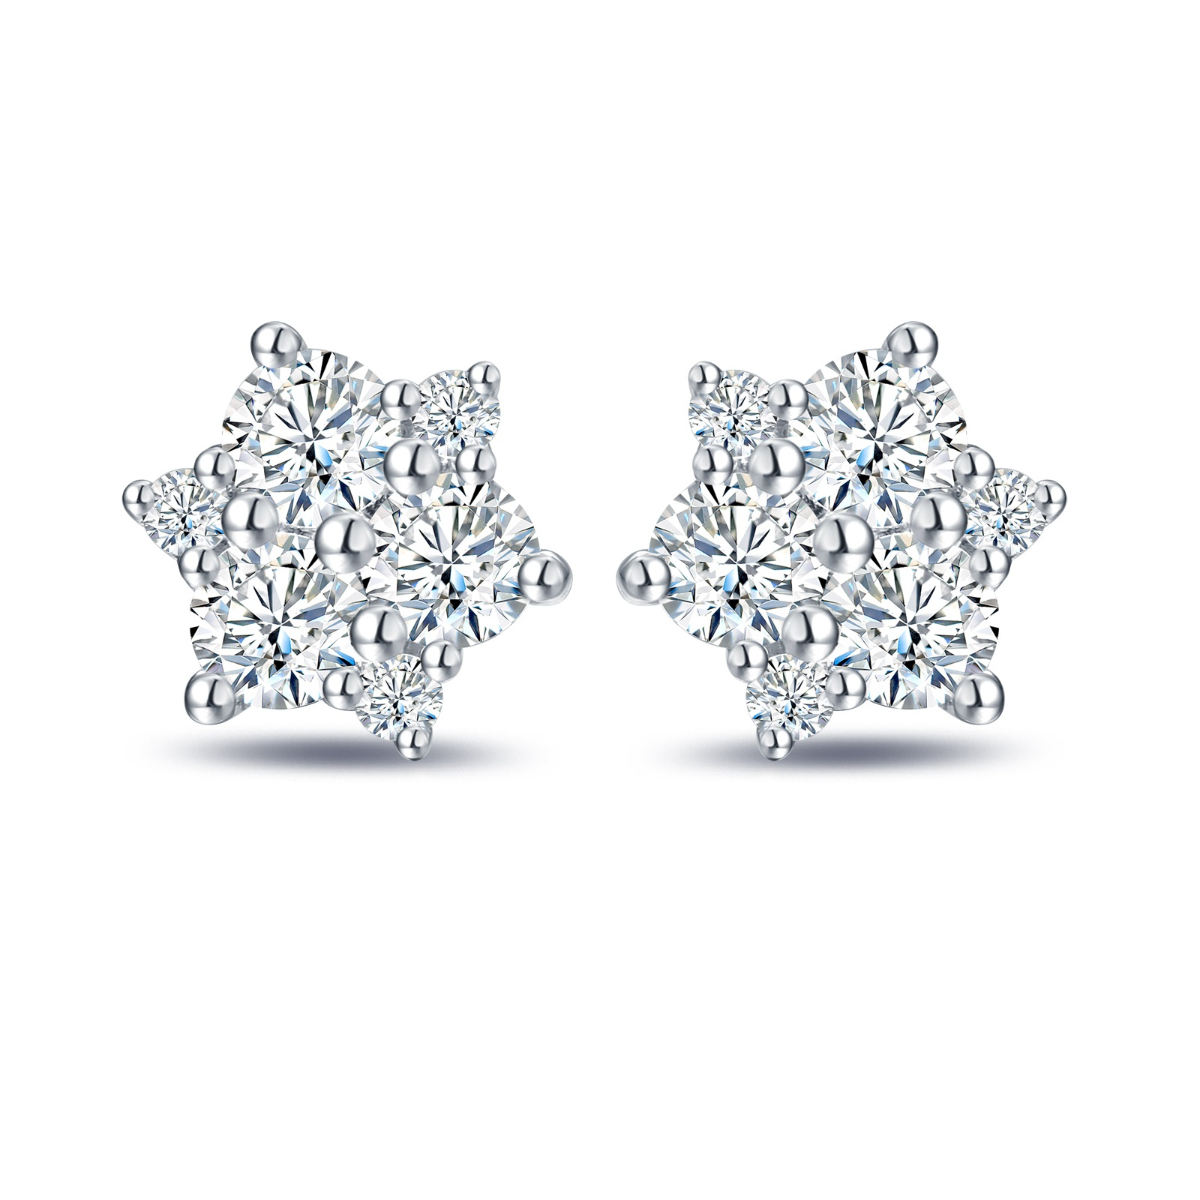 E35561WHT – 18K White Gold Diamond Earring, 0.56 TCW